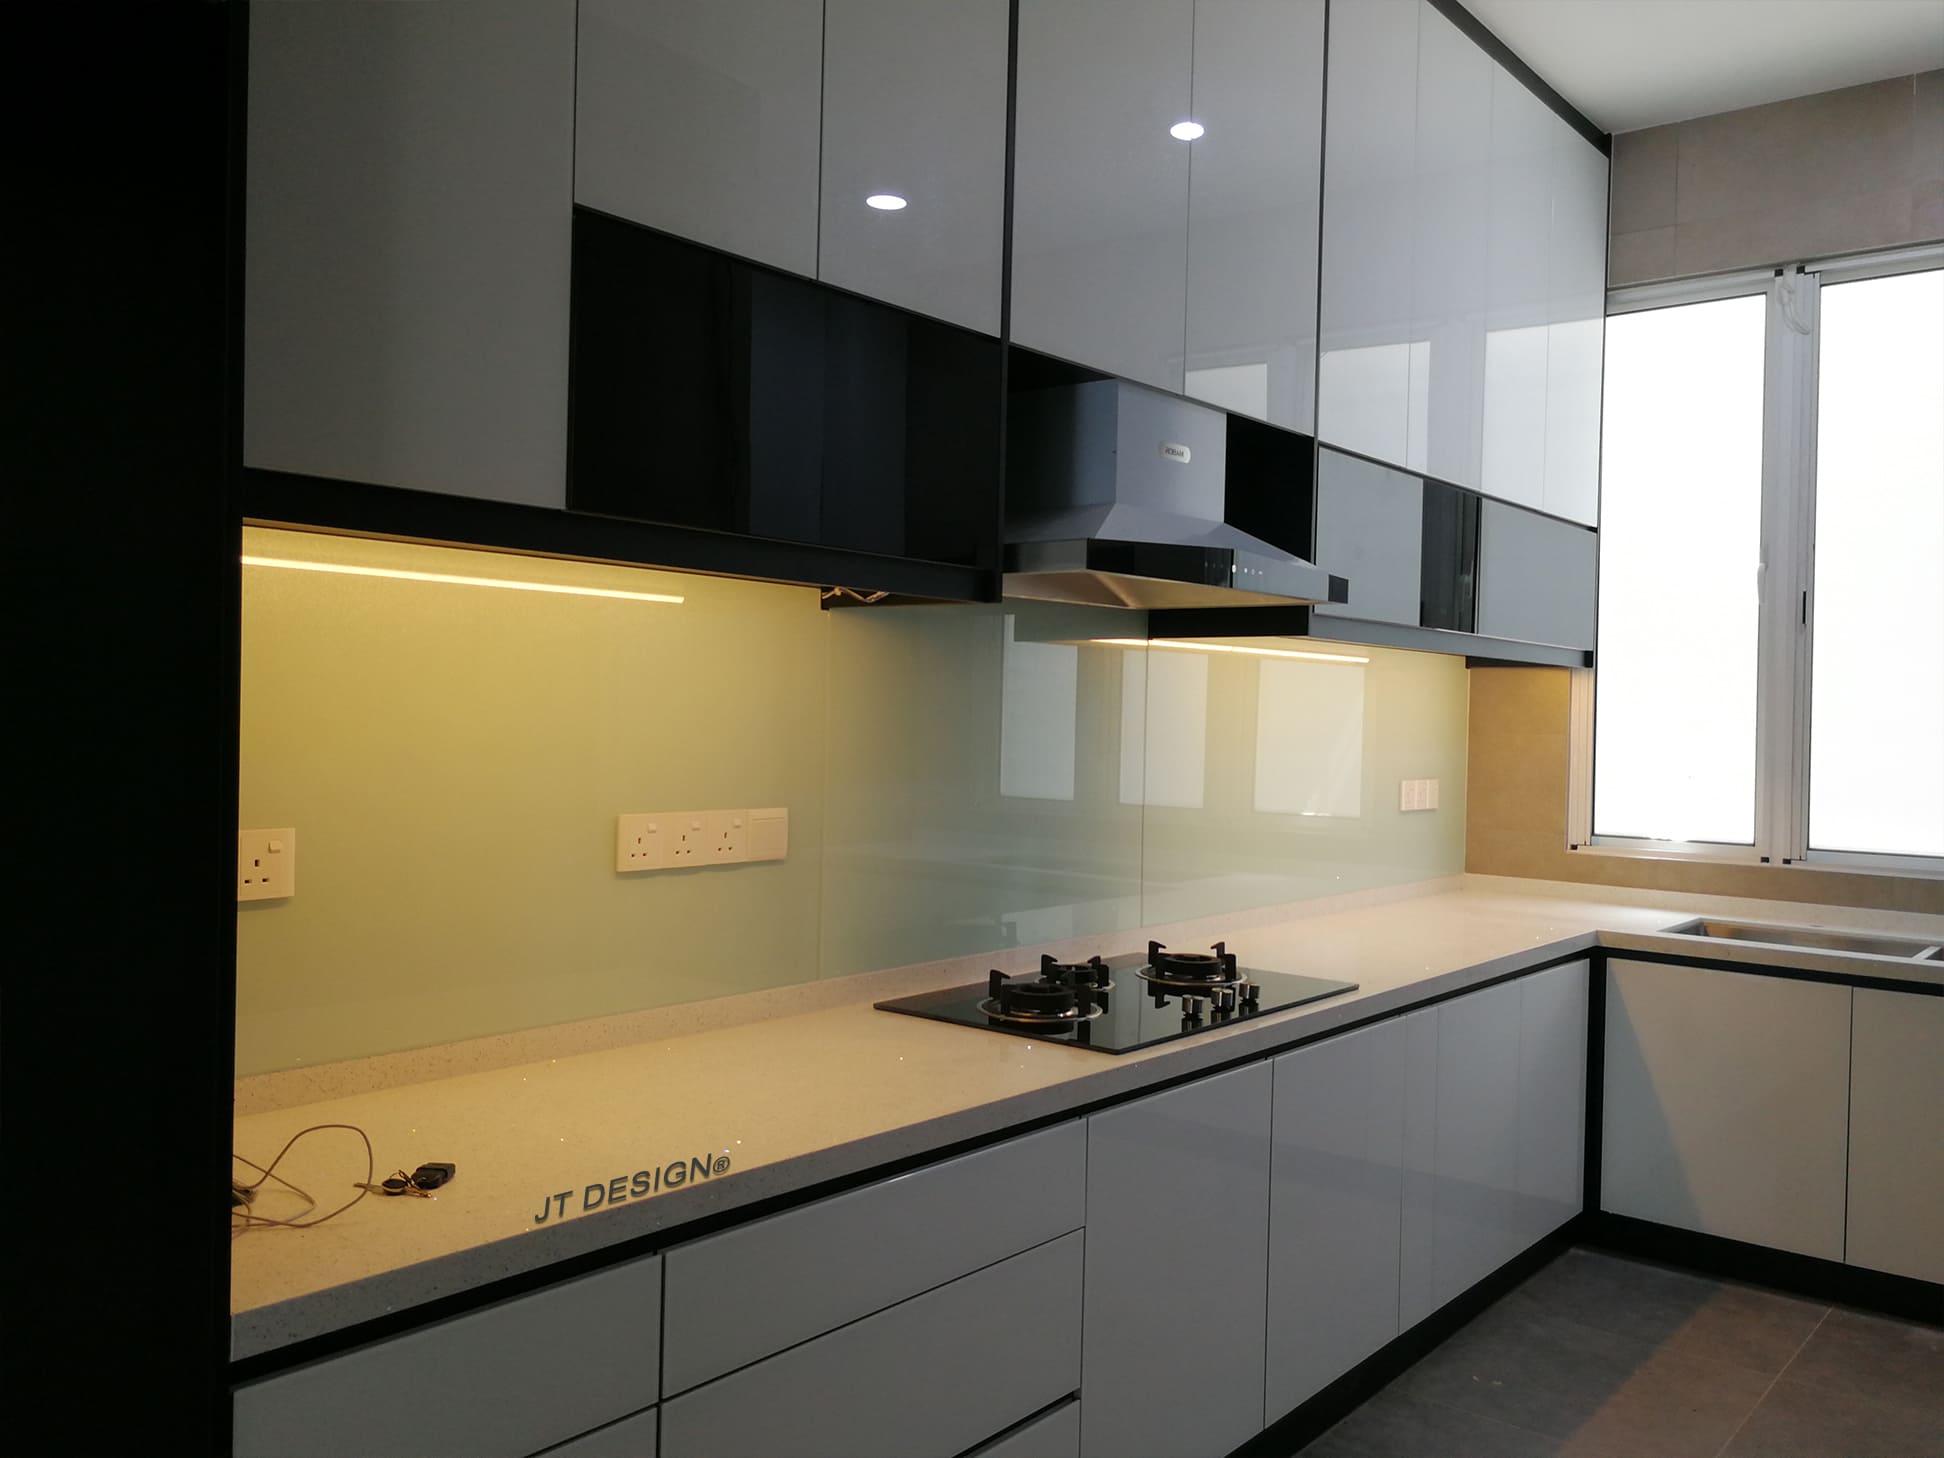 4g glass door kitchen cabinet